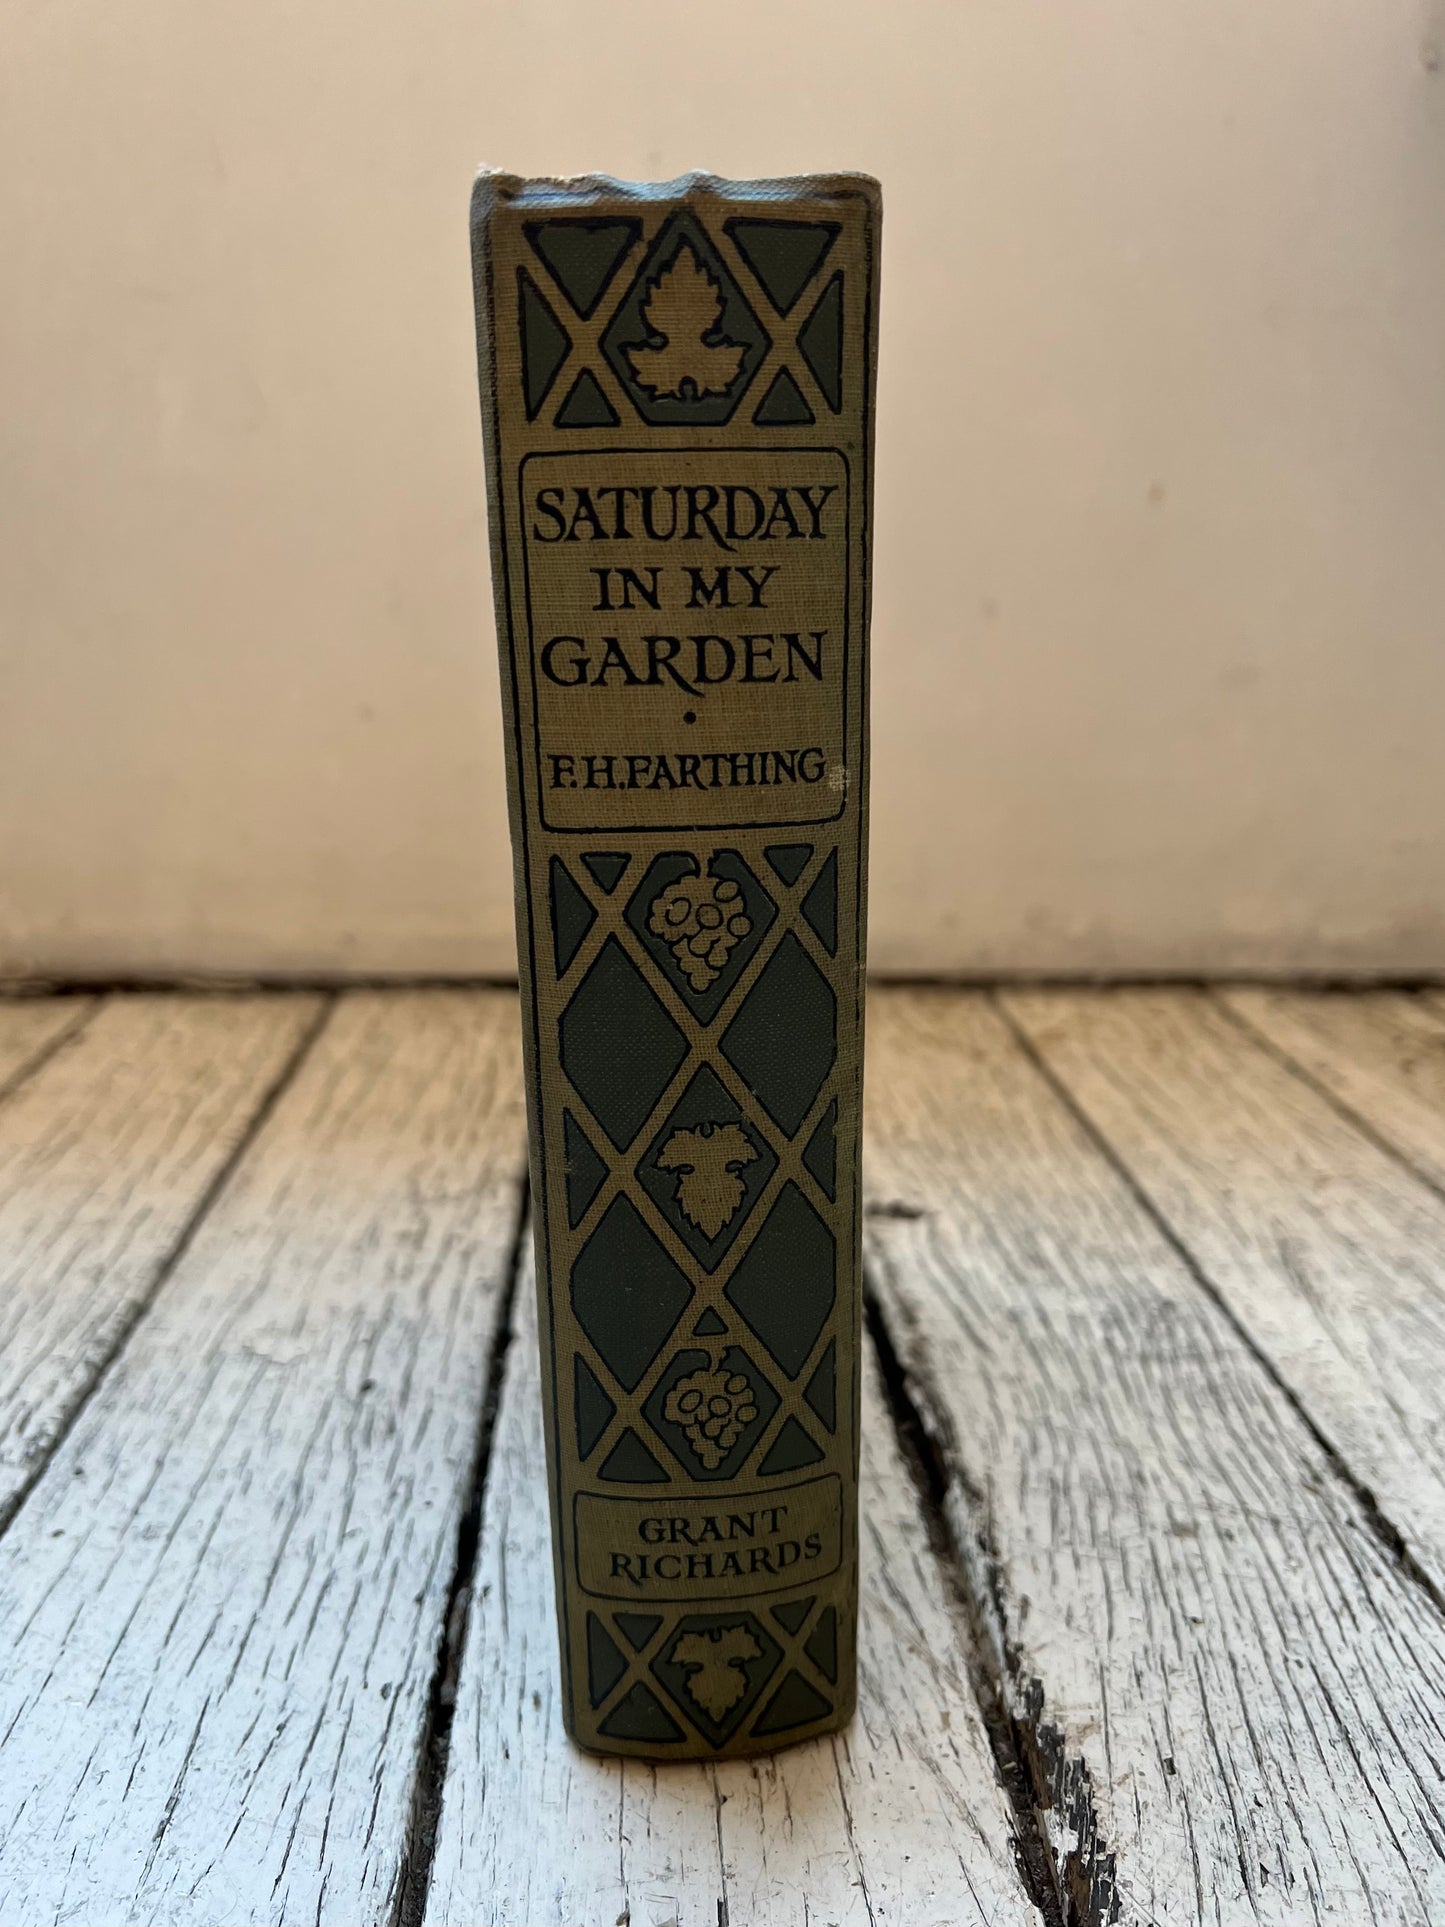 古董级植物学书籍《我的花园里的星期六》，作者 FH Farthing，1926 年版